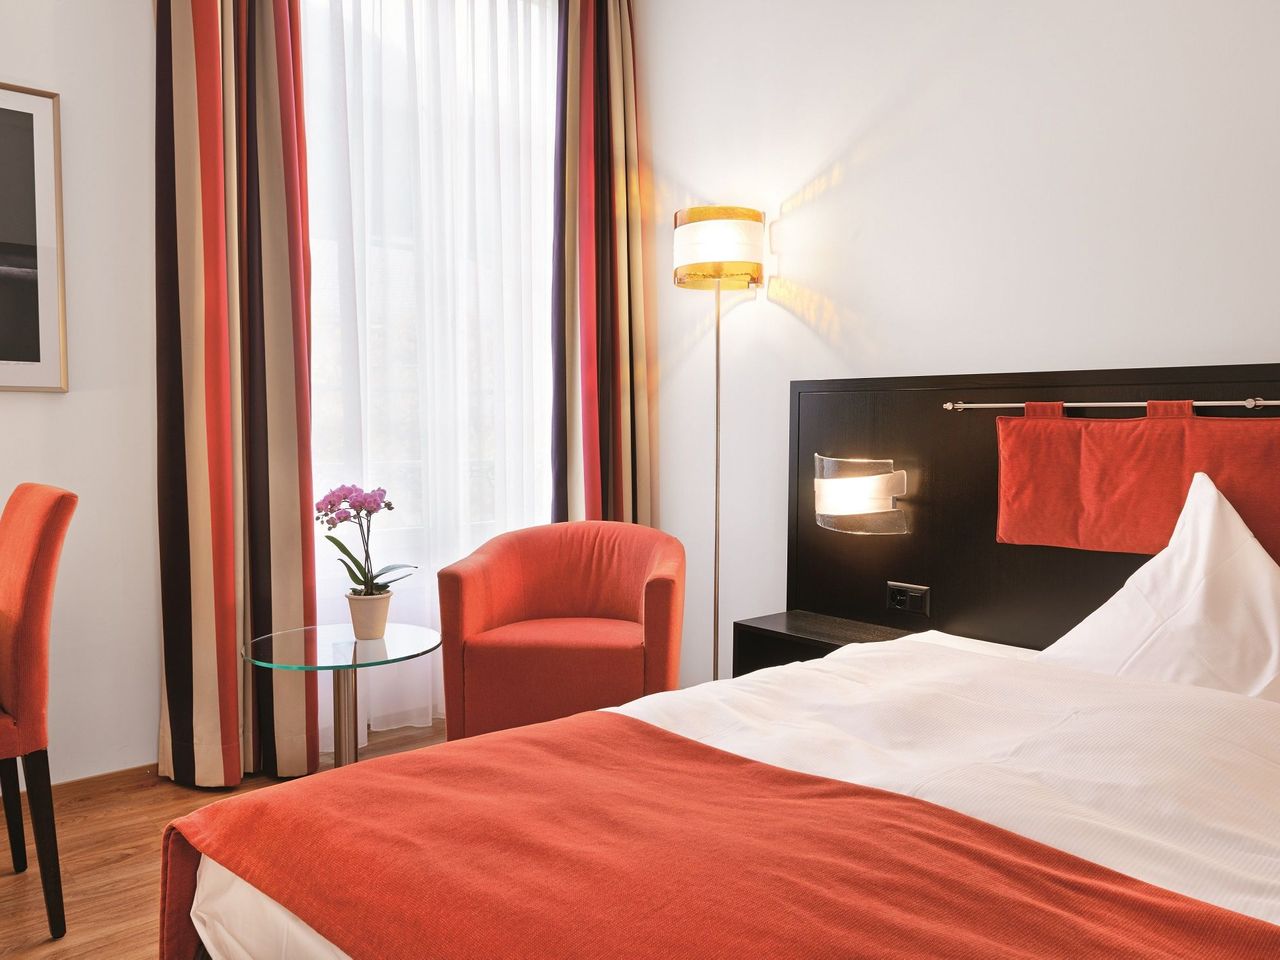 2 Tage Schweiz entdecken im Sorell Hotel Tamina